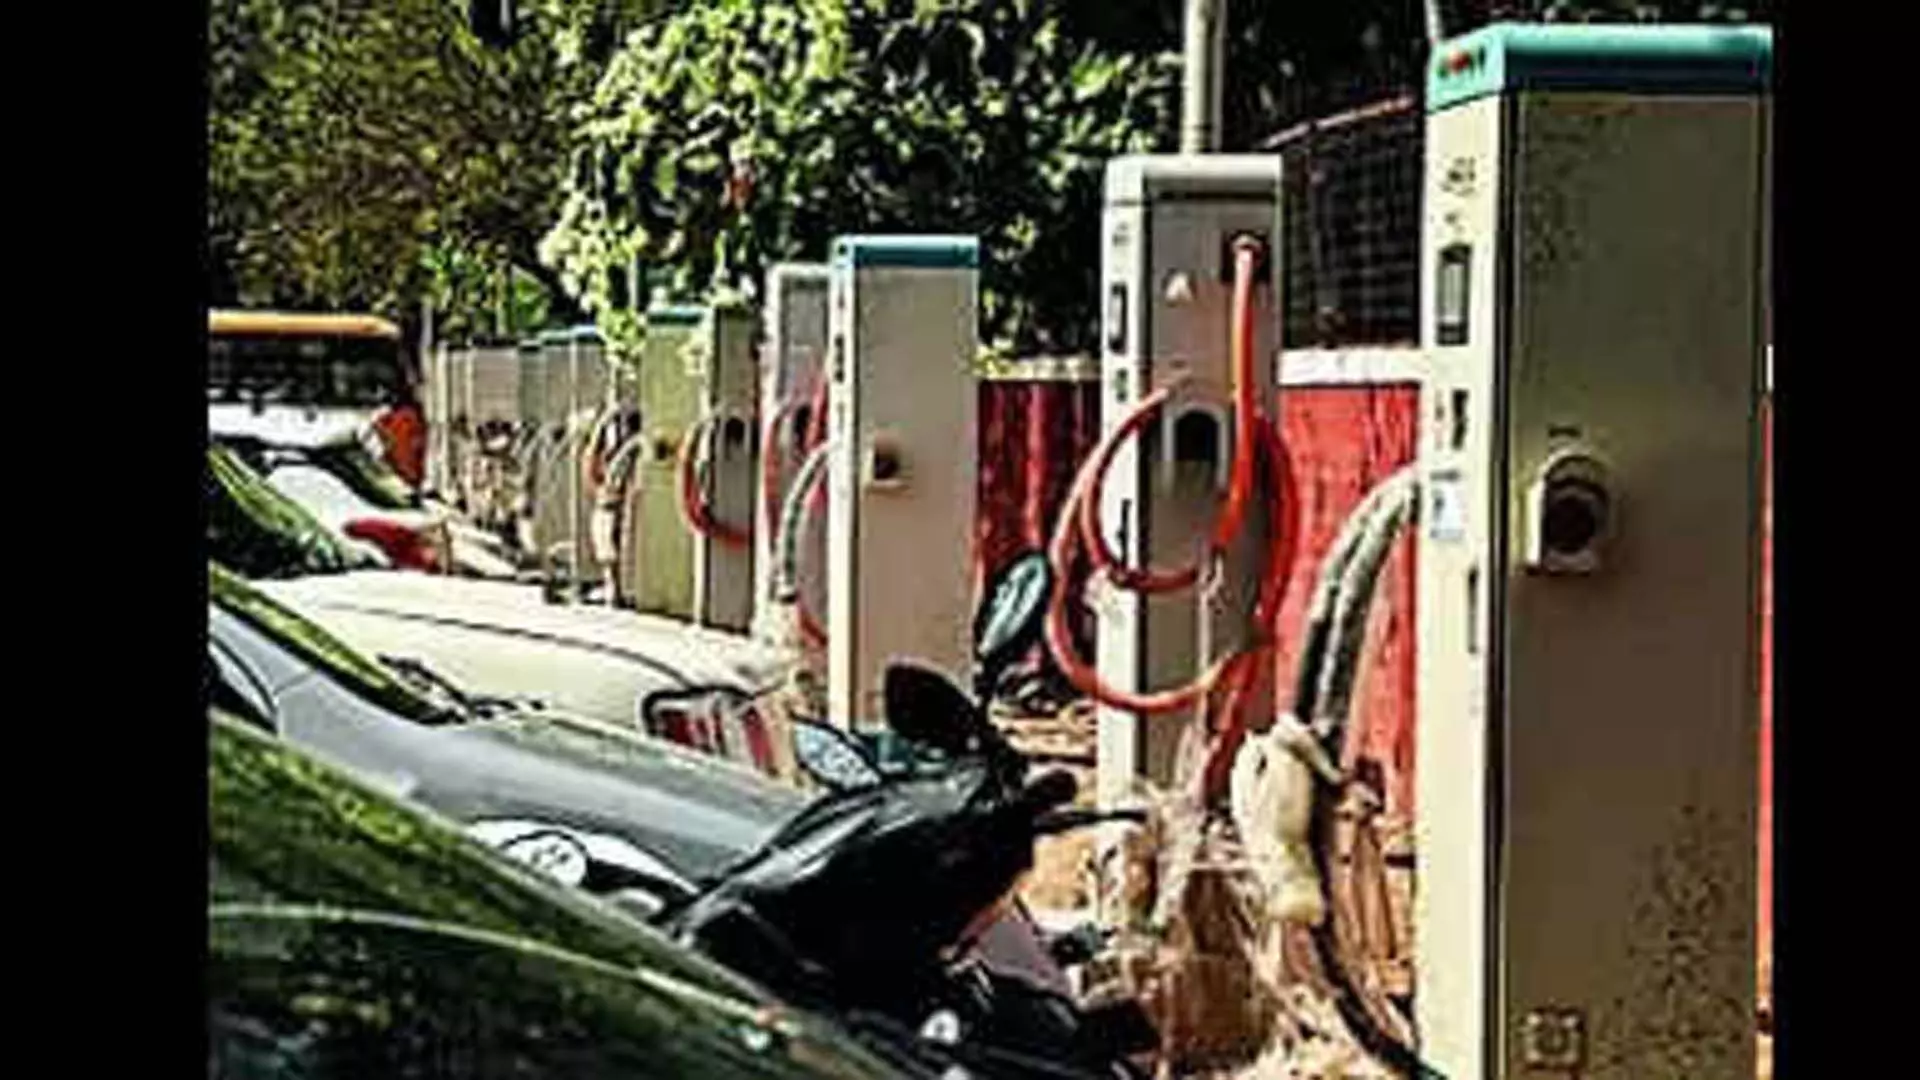 Agartala News : त्रिपुरा ने ईवी चार्जिंग स्टेशनों के लिए धन मांगा